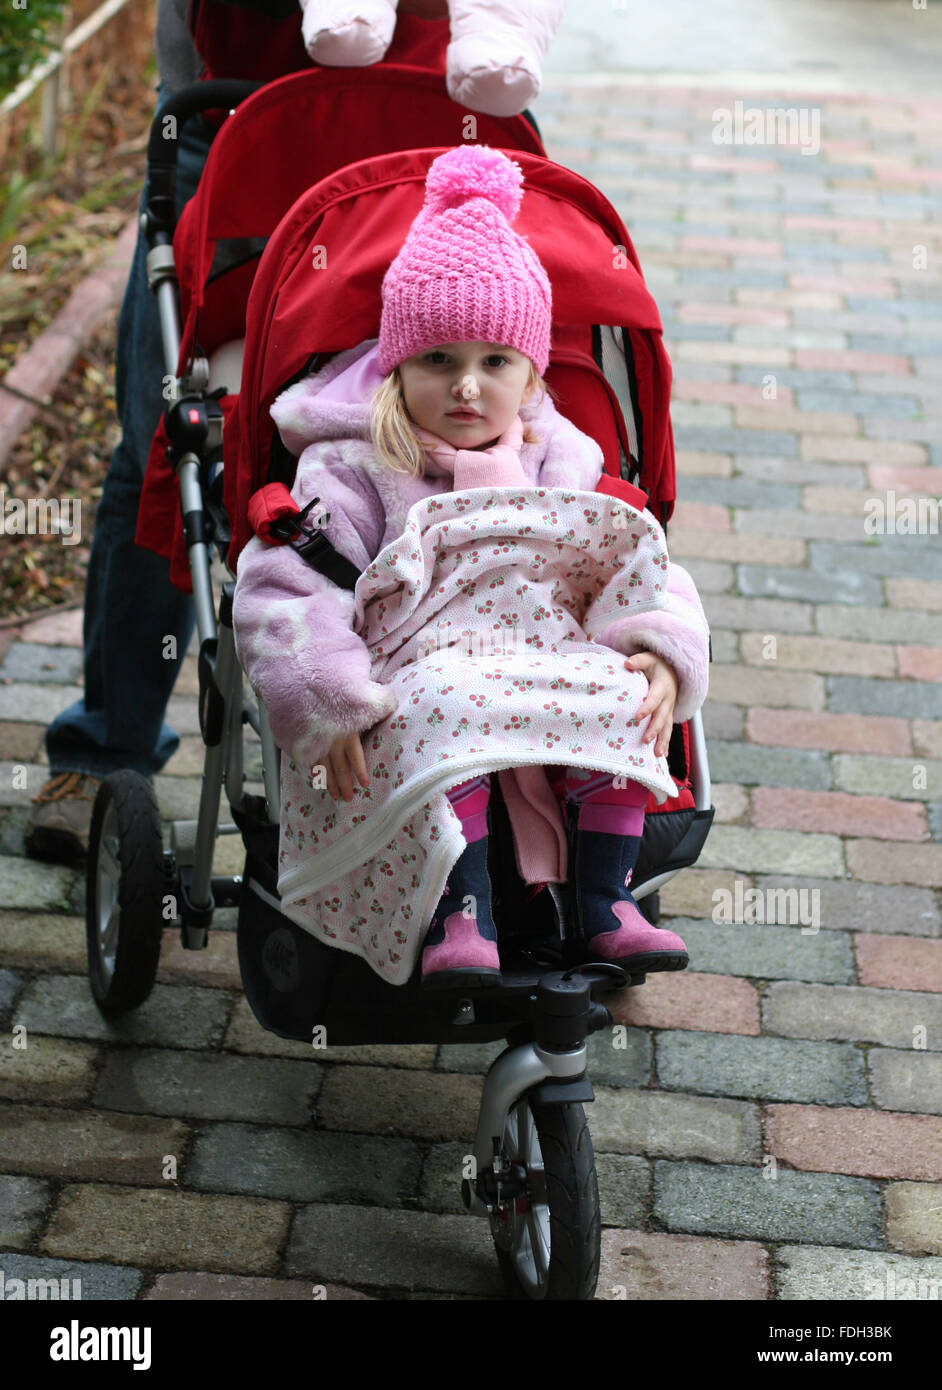 Kleines Mädchen, Kid, Kind trägt einen Winter bobble Hut in der Buggy mit  ihrer Decke gehen für einen Spaziergang an einem kalten Wintertag sitzt  Stockfotografie - Alamy